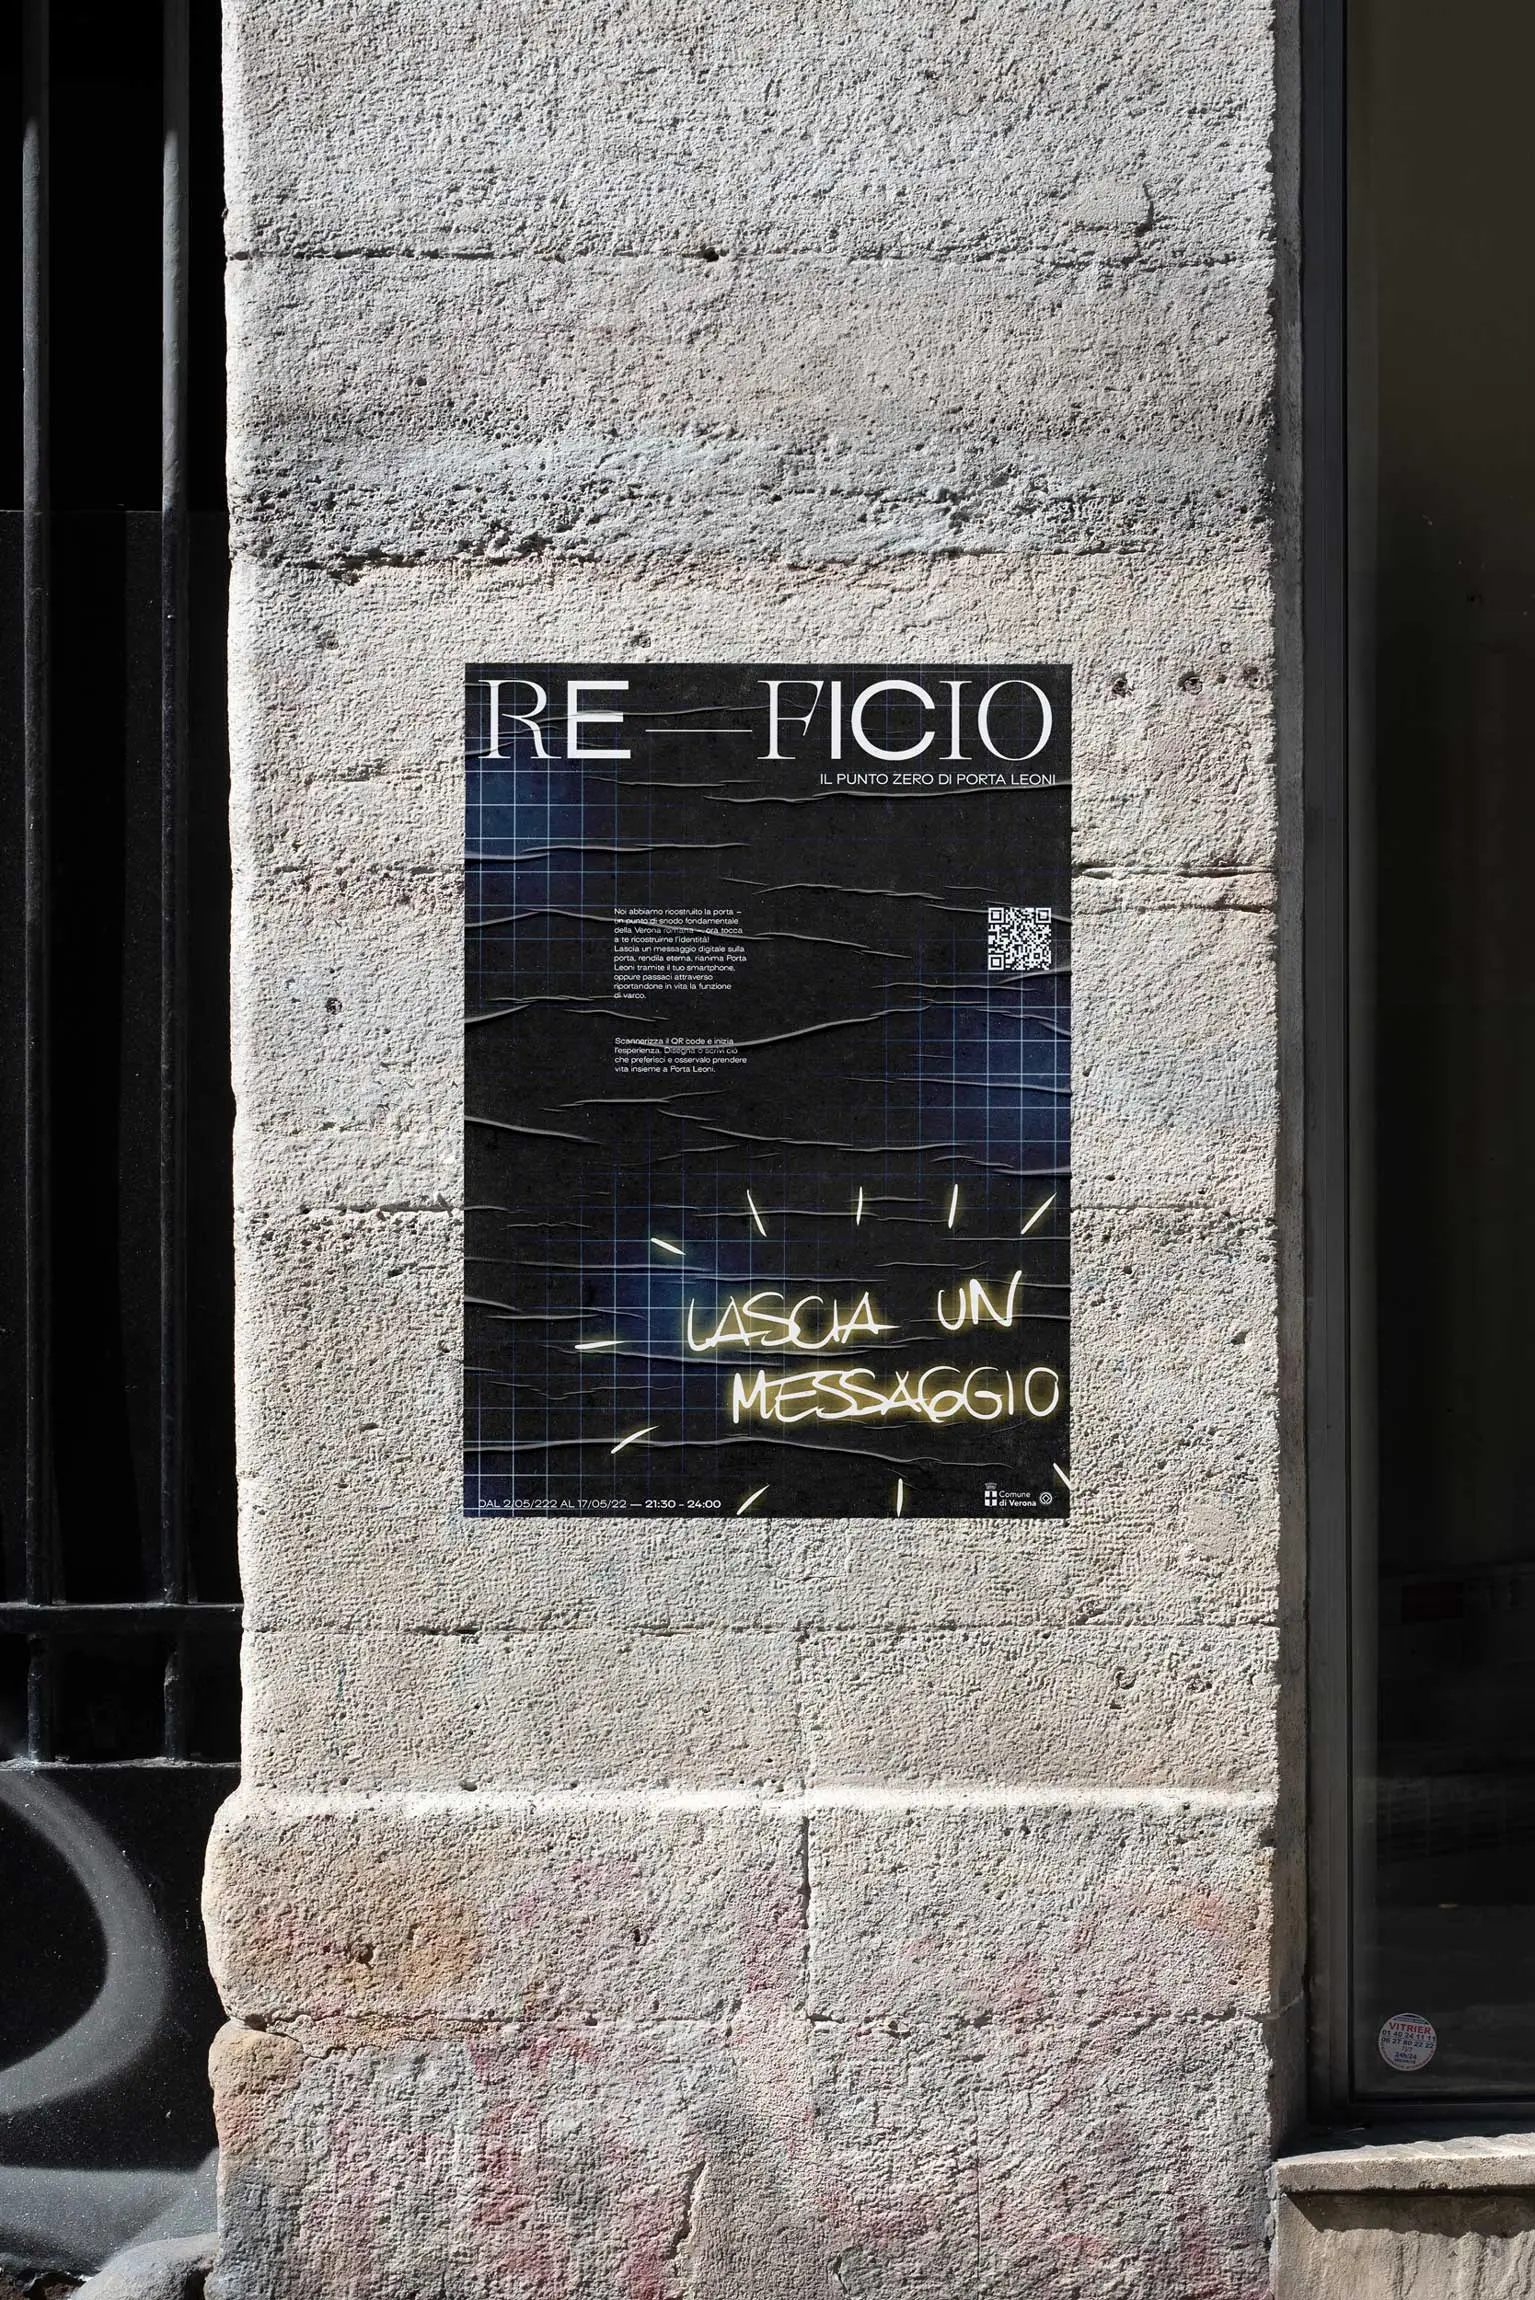 Reficio Verona Poster | Carlotta Bacchini